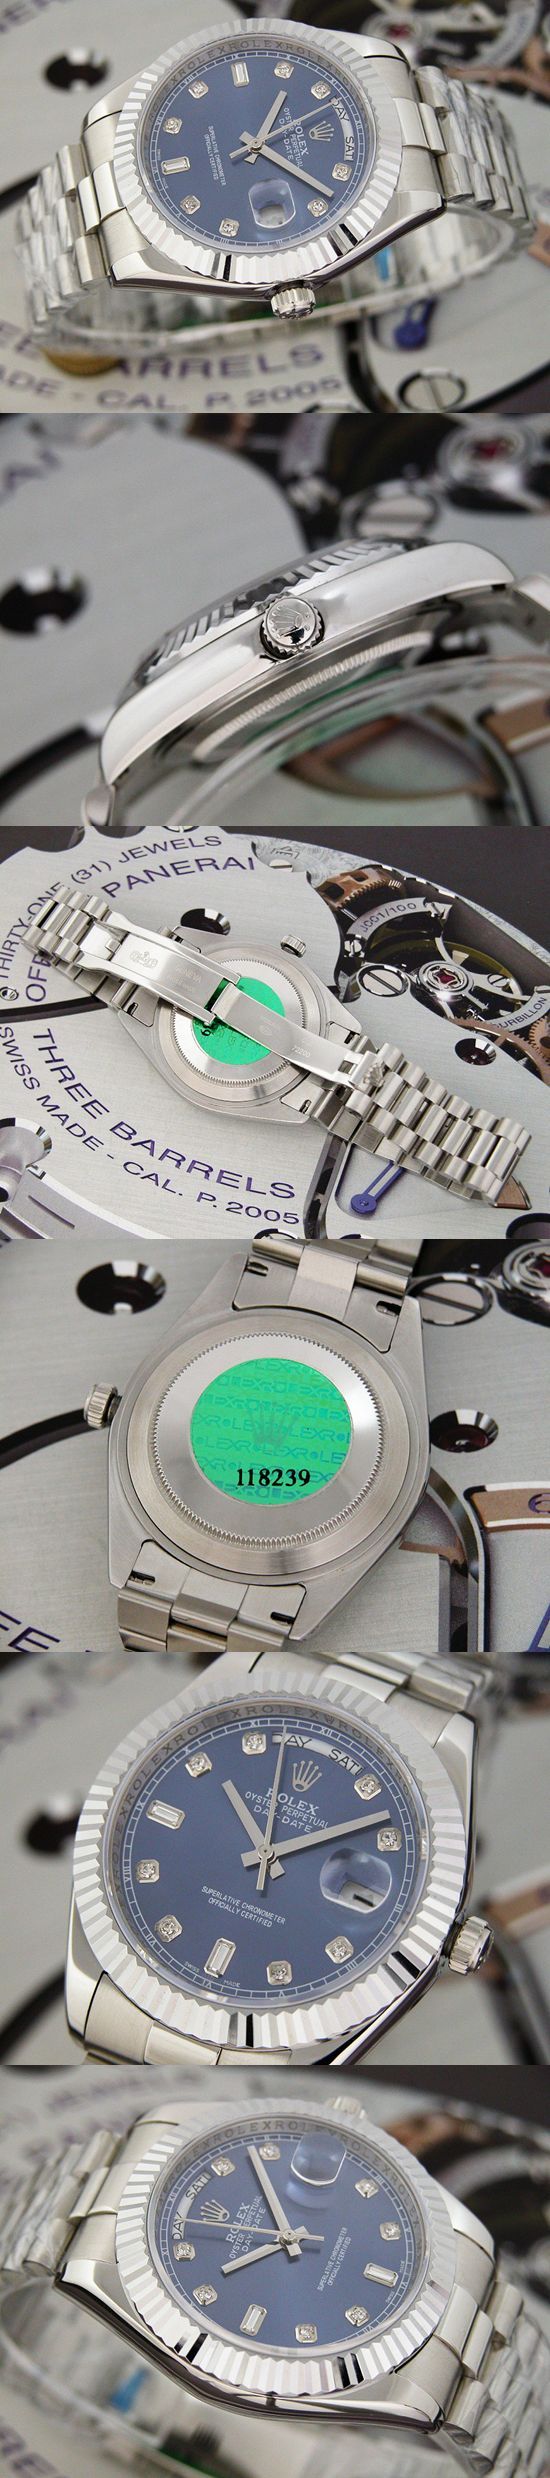 おしゃれなブランド時計がロレックス-デイデイト-ROLEX-118239-95-男性用を提供します.